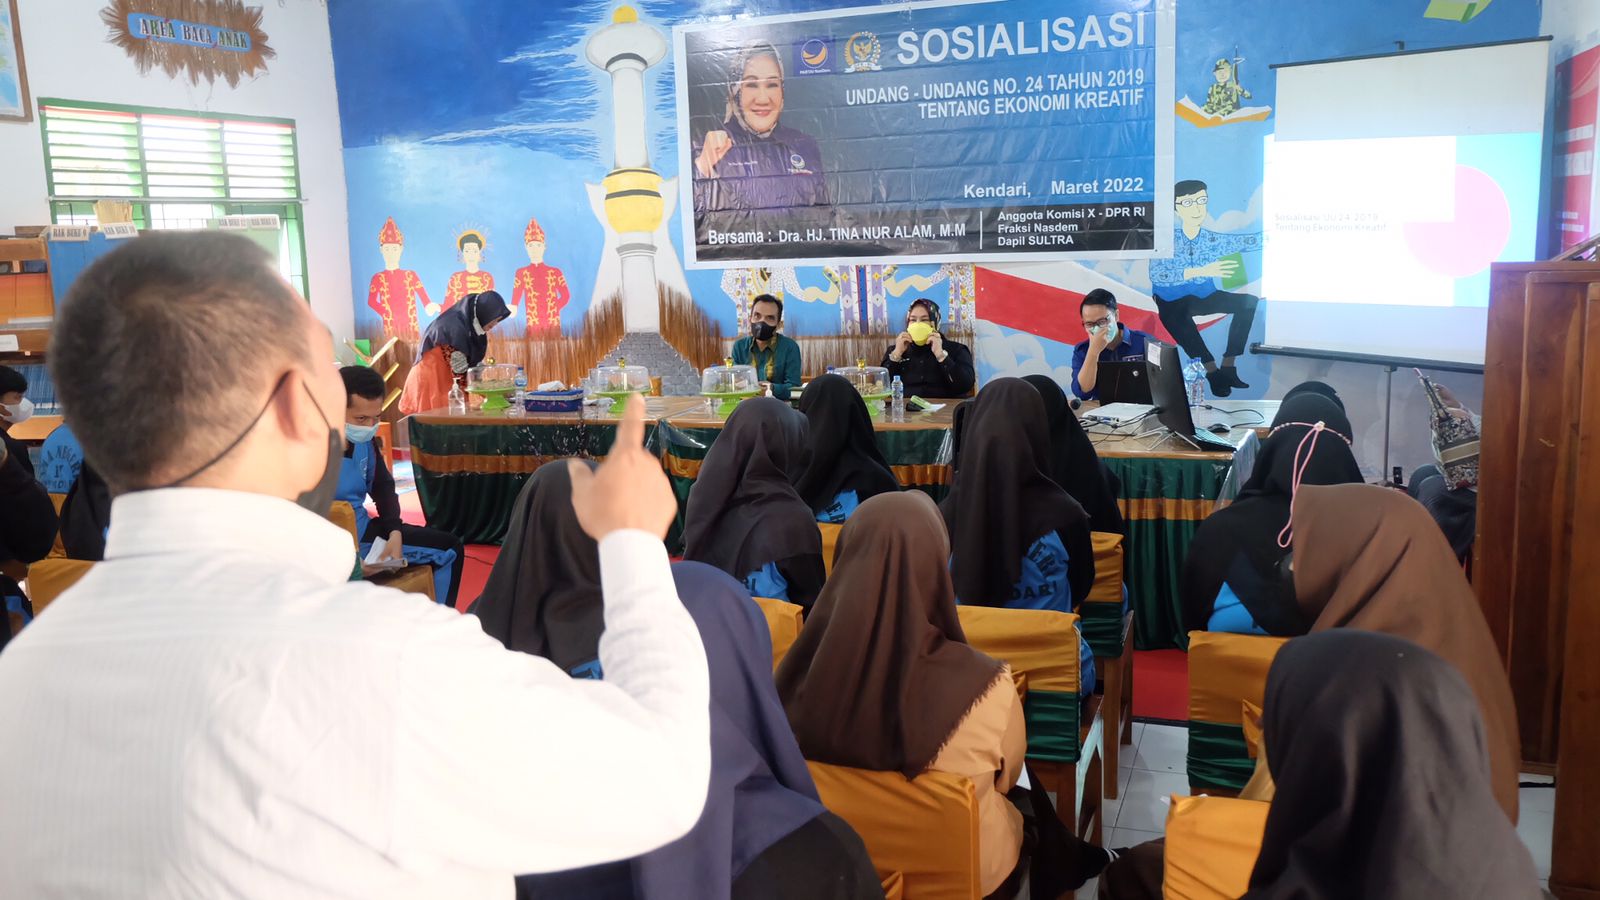 Tina Nur Alam Sosialisasi UU Ekonomi Kreatif dan Berikan Bantuan di SMAN 11 Kendari